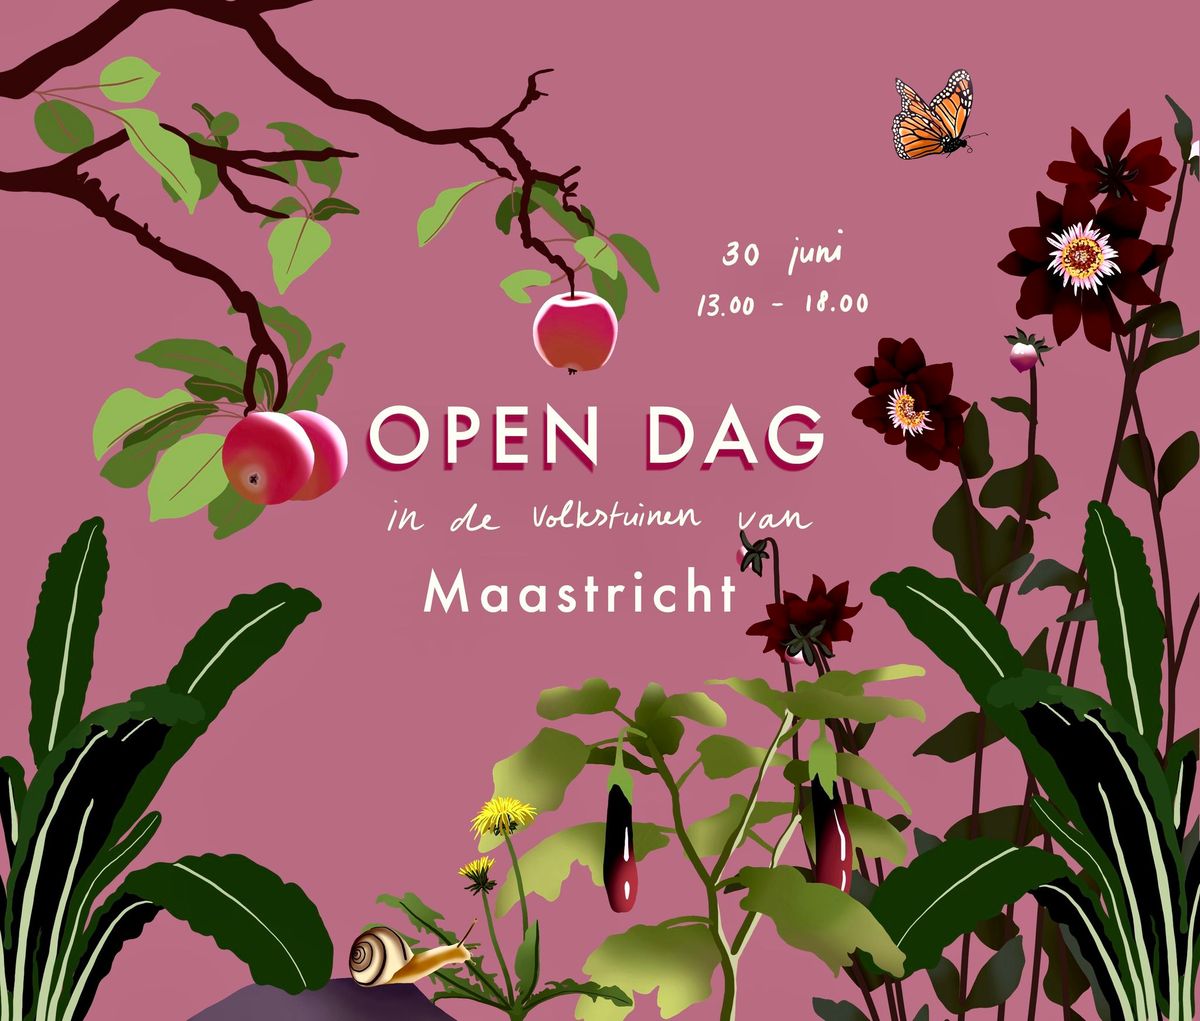 Open dag volkstuinen van Maastricht